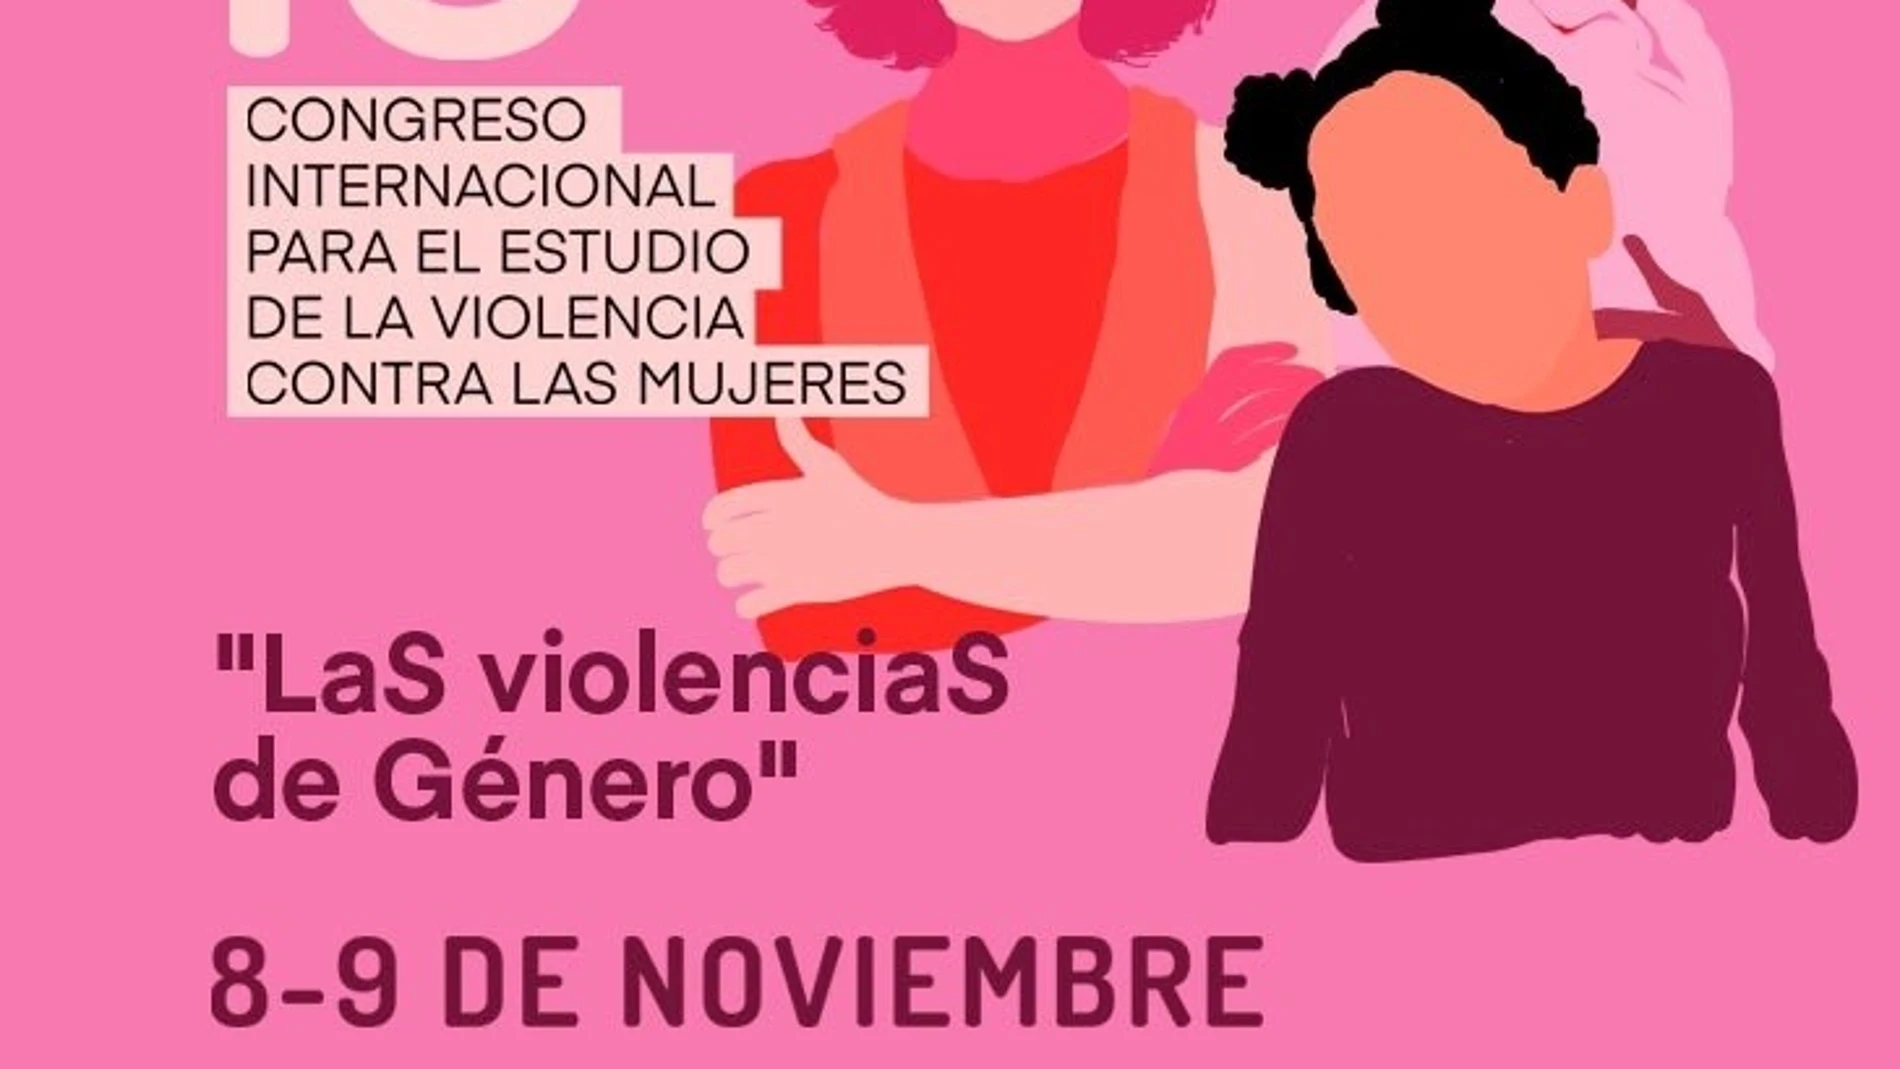 Últimos días para presentar artículos científicos al XIII Congreso para el estudio de la violencia contra las mujeres. JUNTA DE ANDALUCÍA